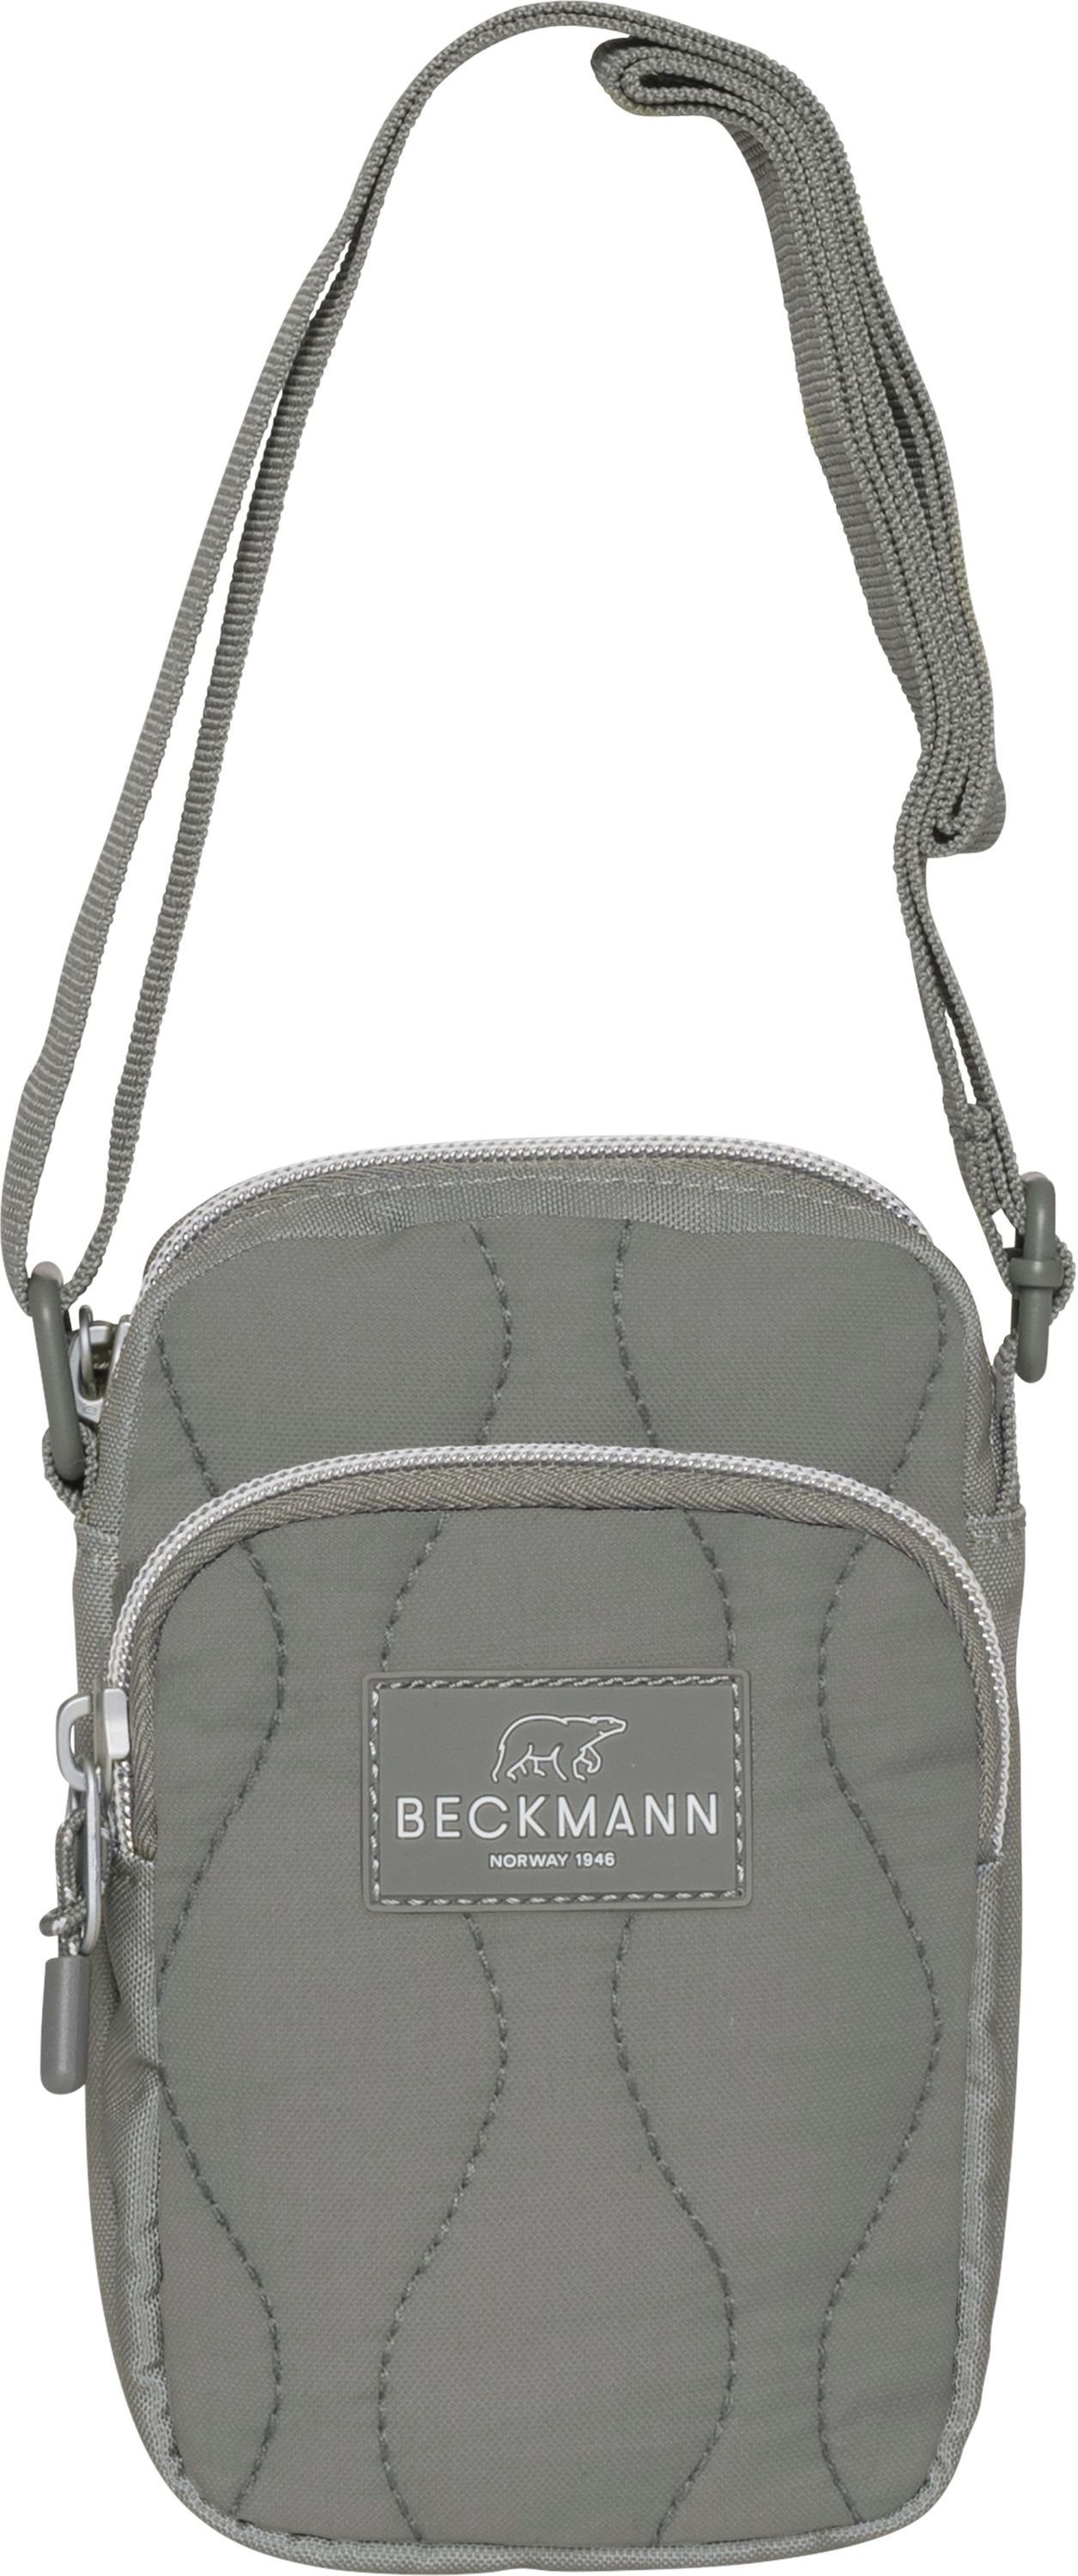 Beckmann Bauchtasche Umhängetasche Crossbodybag Sport Green Padded (1 Stück), Schultertasche, Handtasche